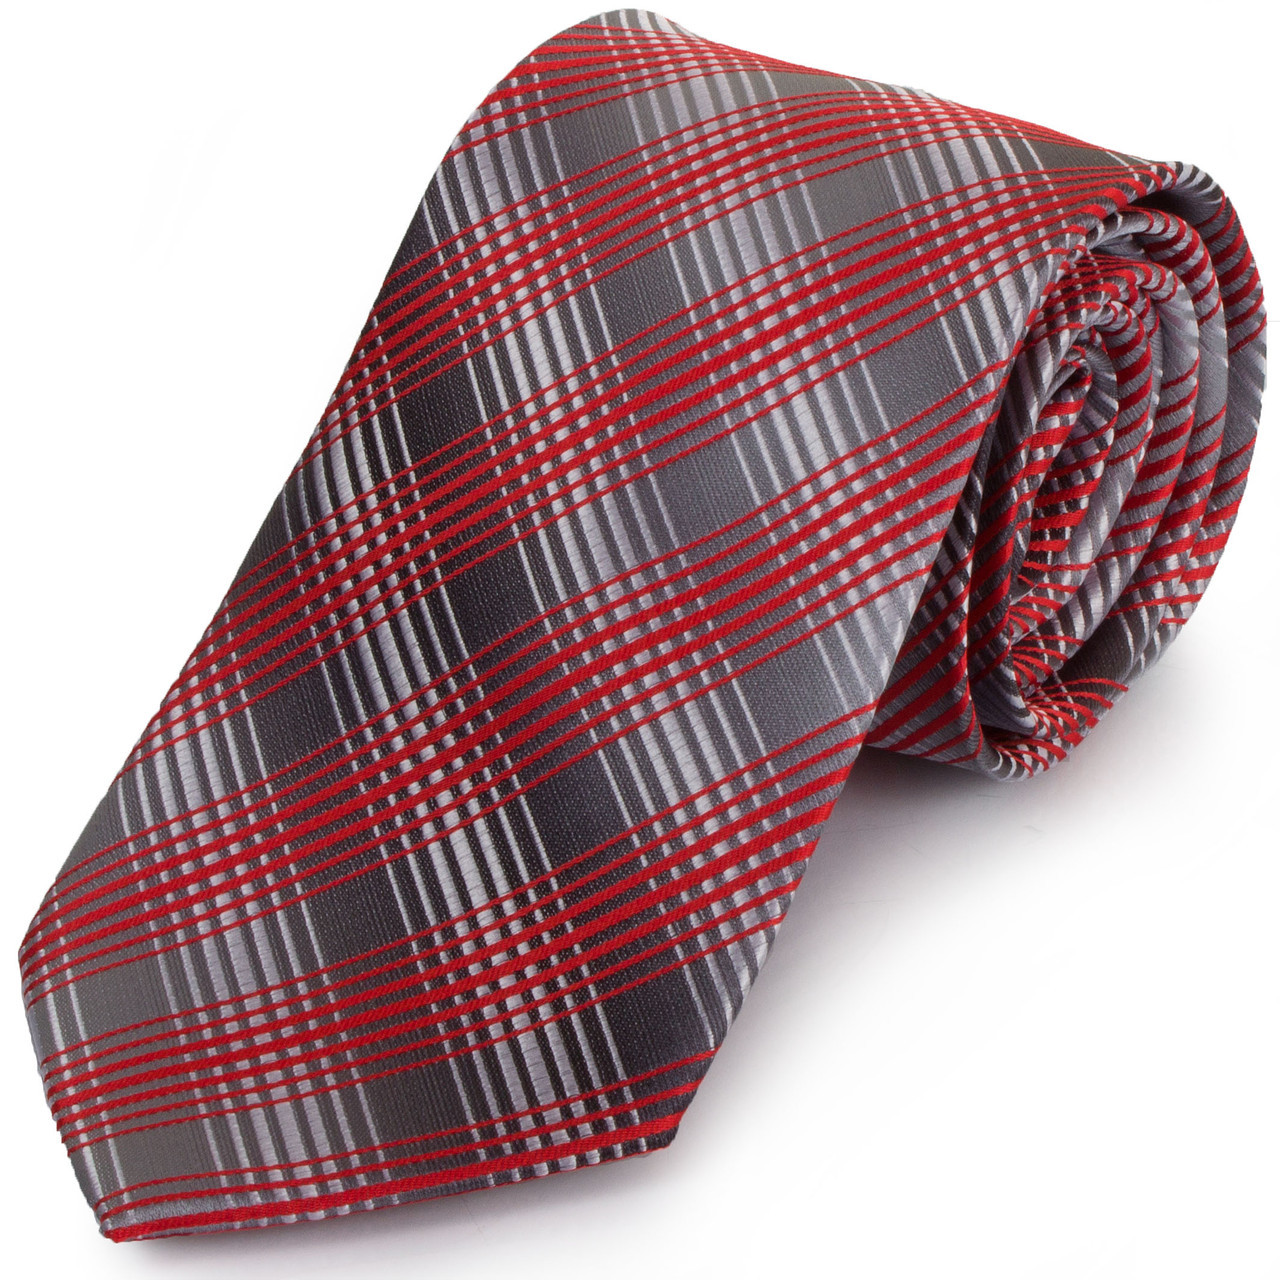 Краватка поліестерова стандартна сіро-червона Schönau -91 KB, код: 7764081